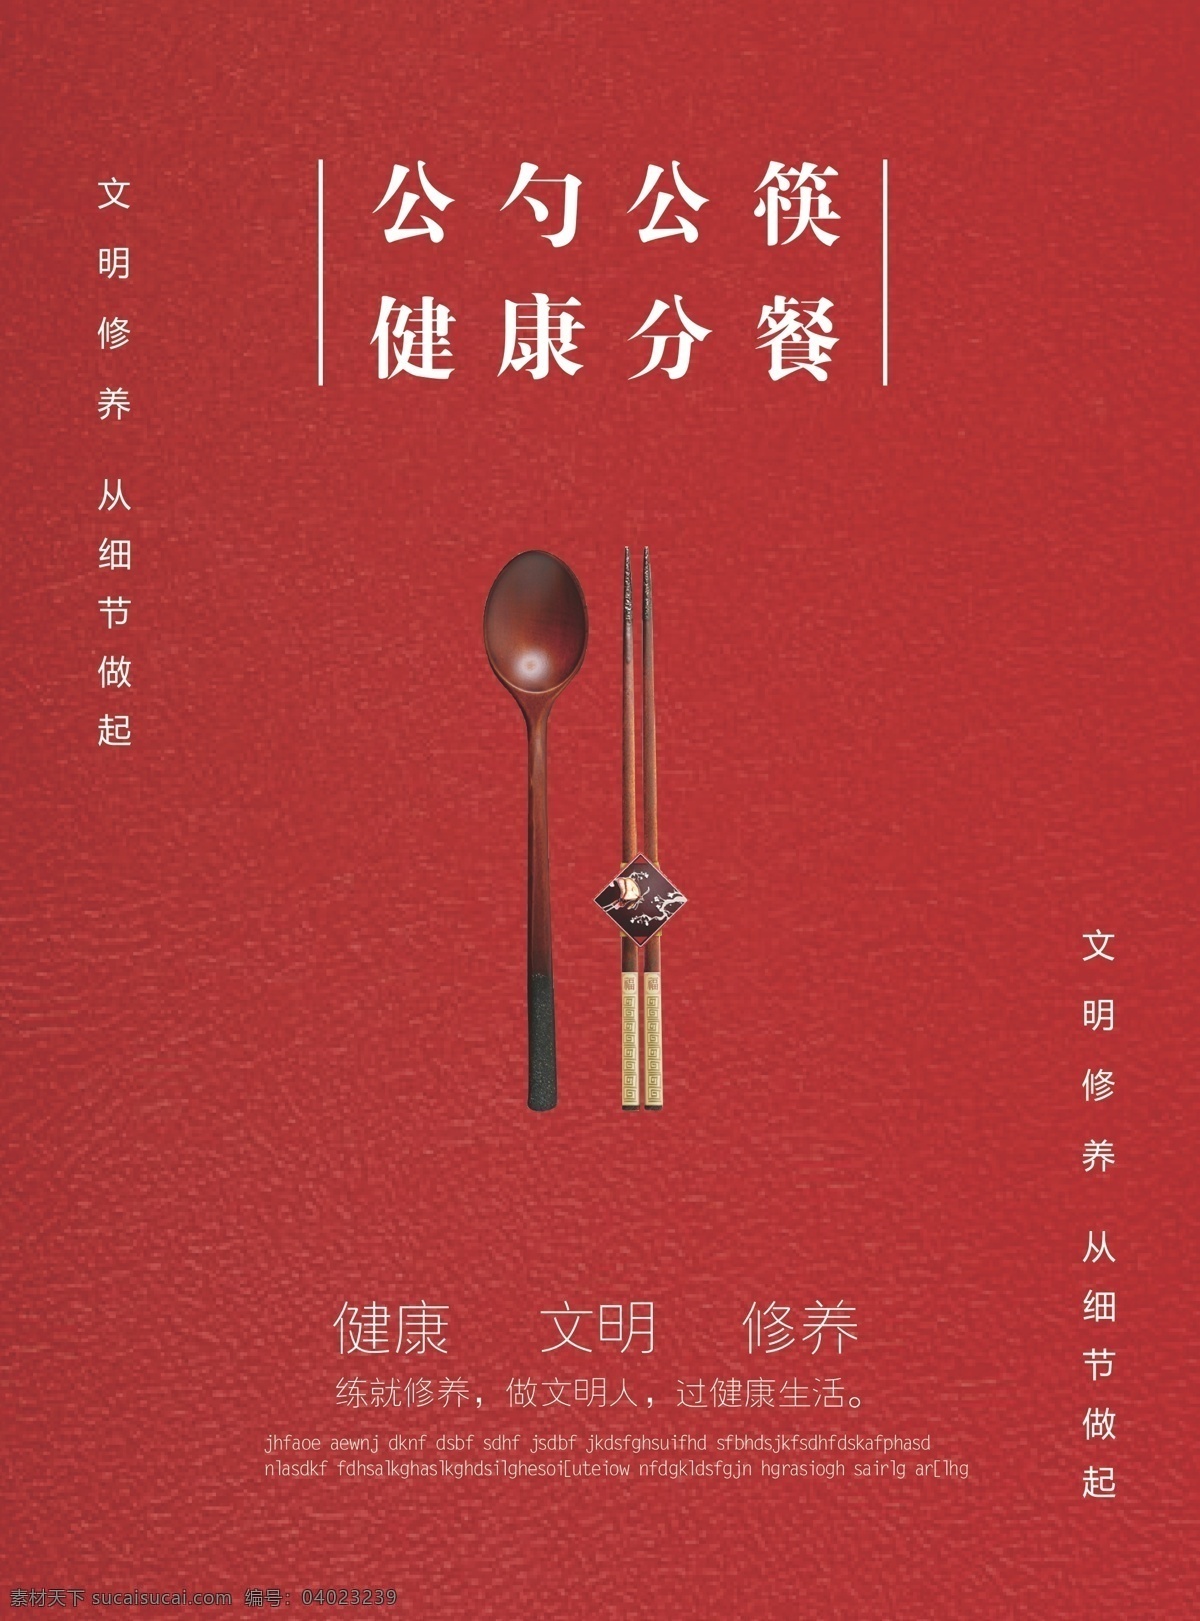 公筷公勺健康 公筷公勺 文明 健康 彩页 分餐 dm宣传单